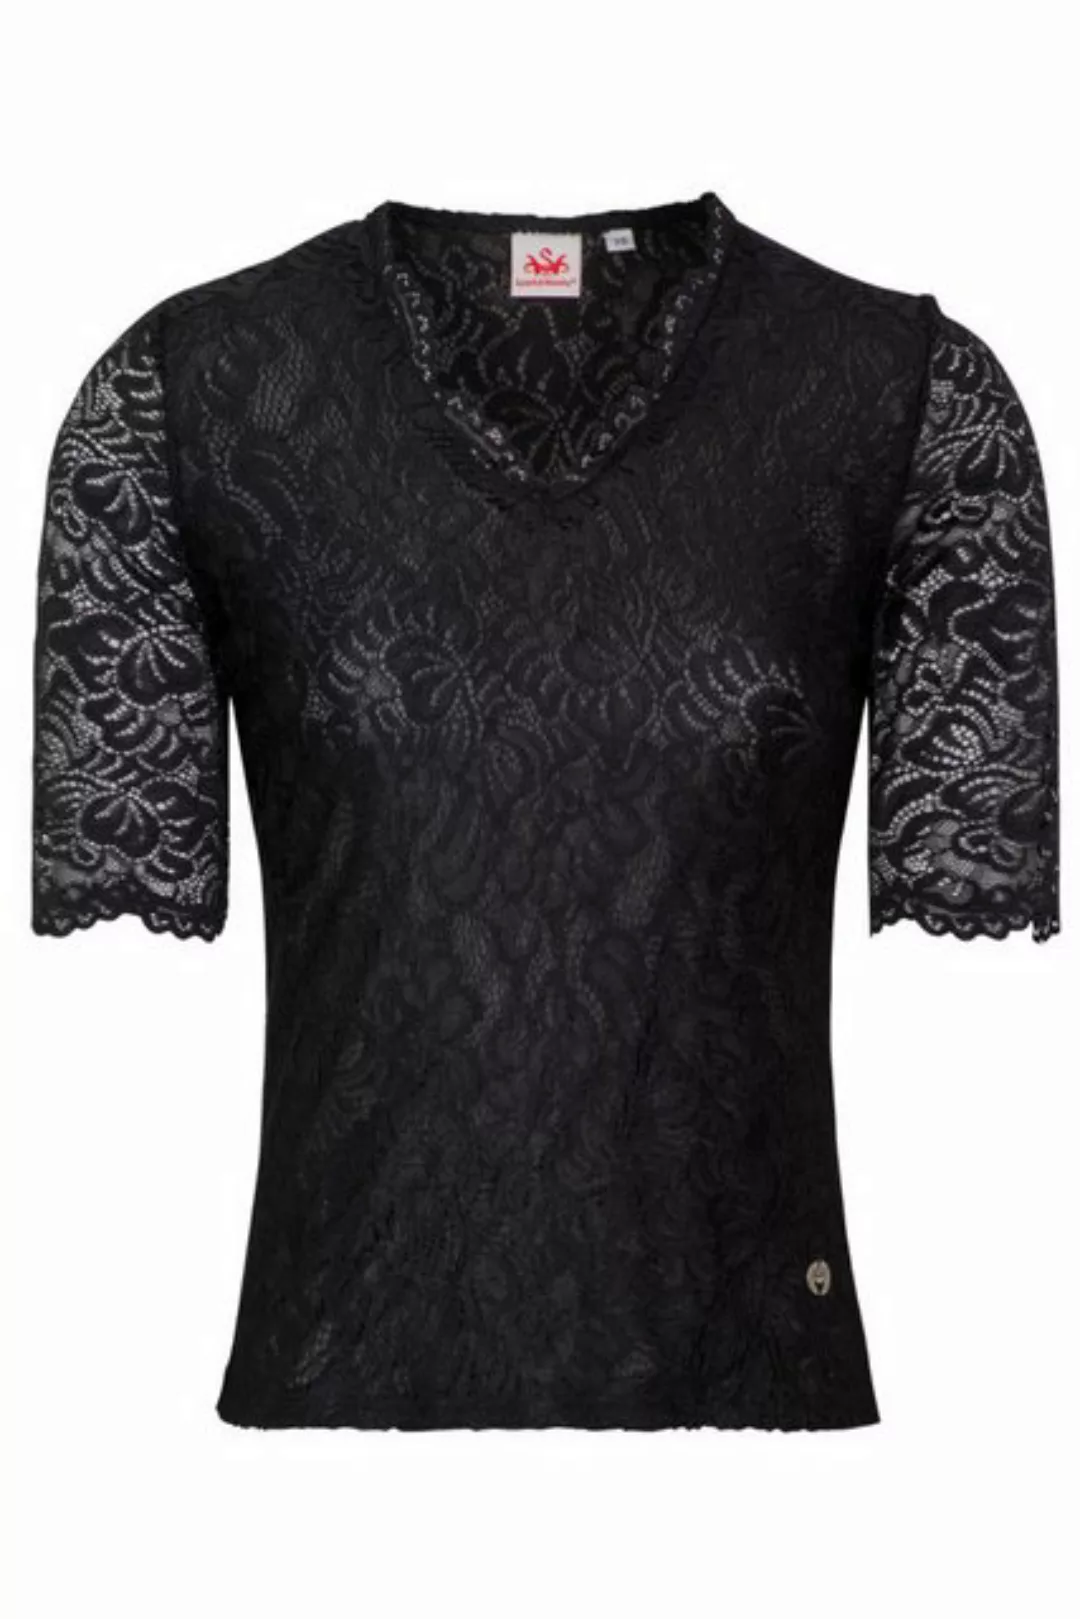 Spieth & Wensky Trachtenbluse Blusenshirt - ARKTIS - schwarz, weiß günstig online kaufen